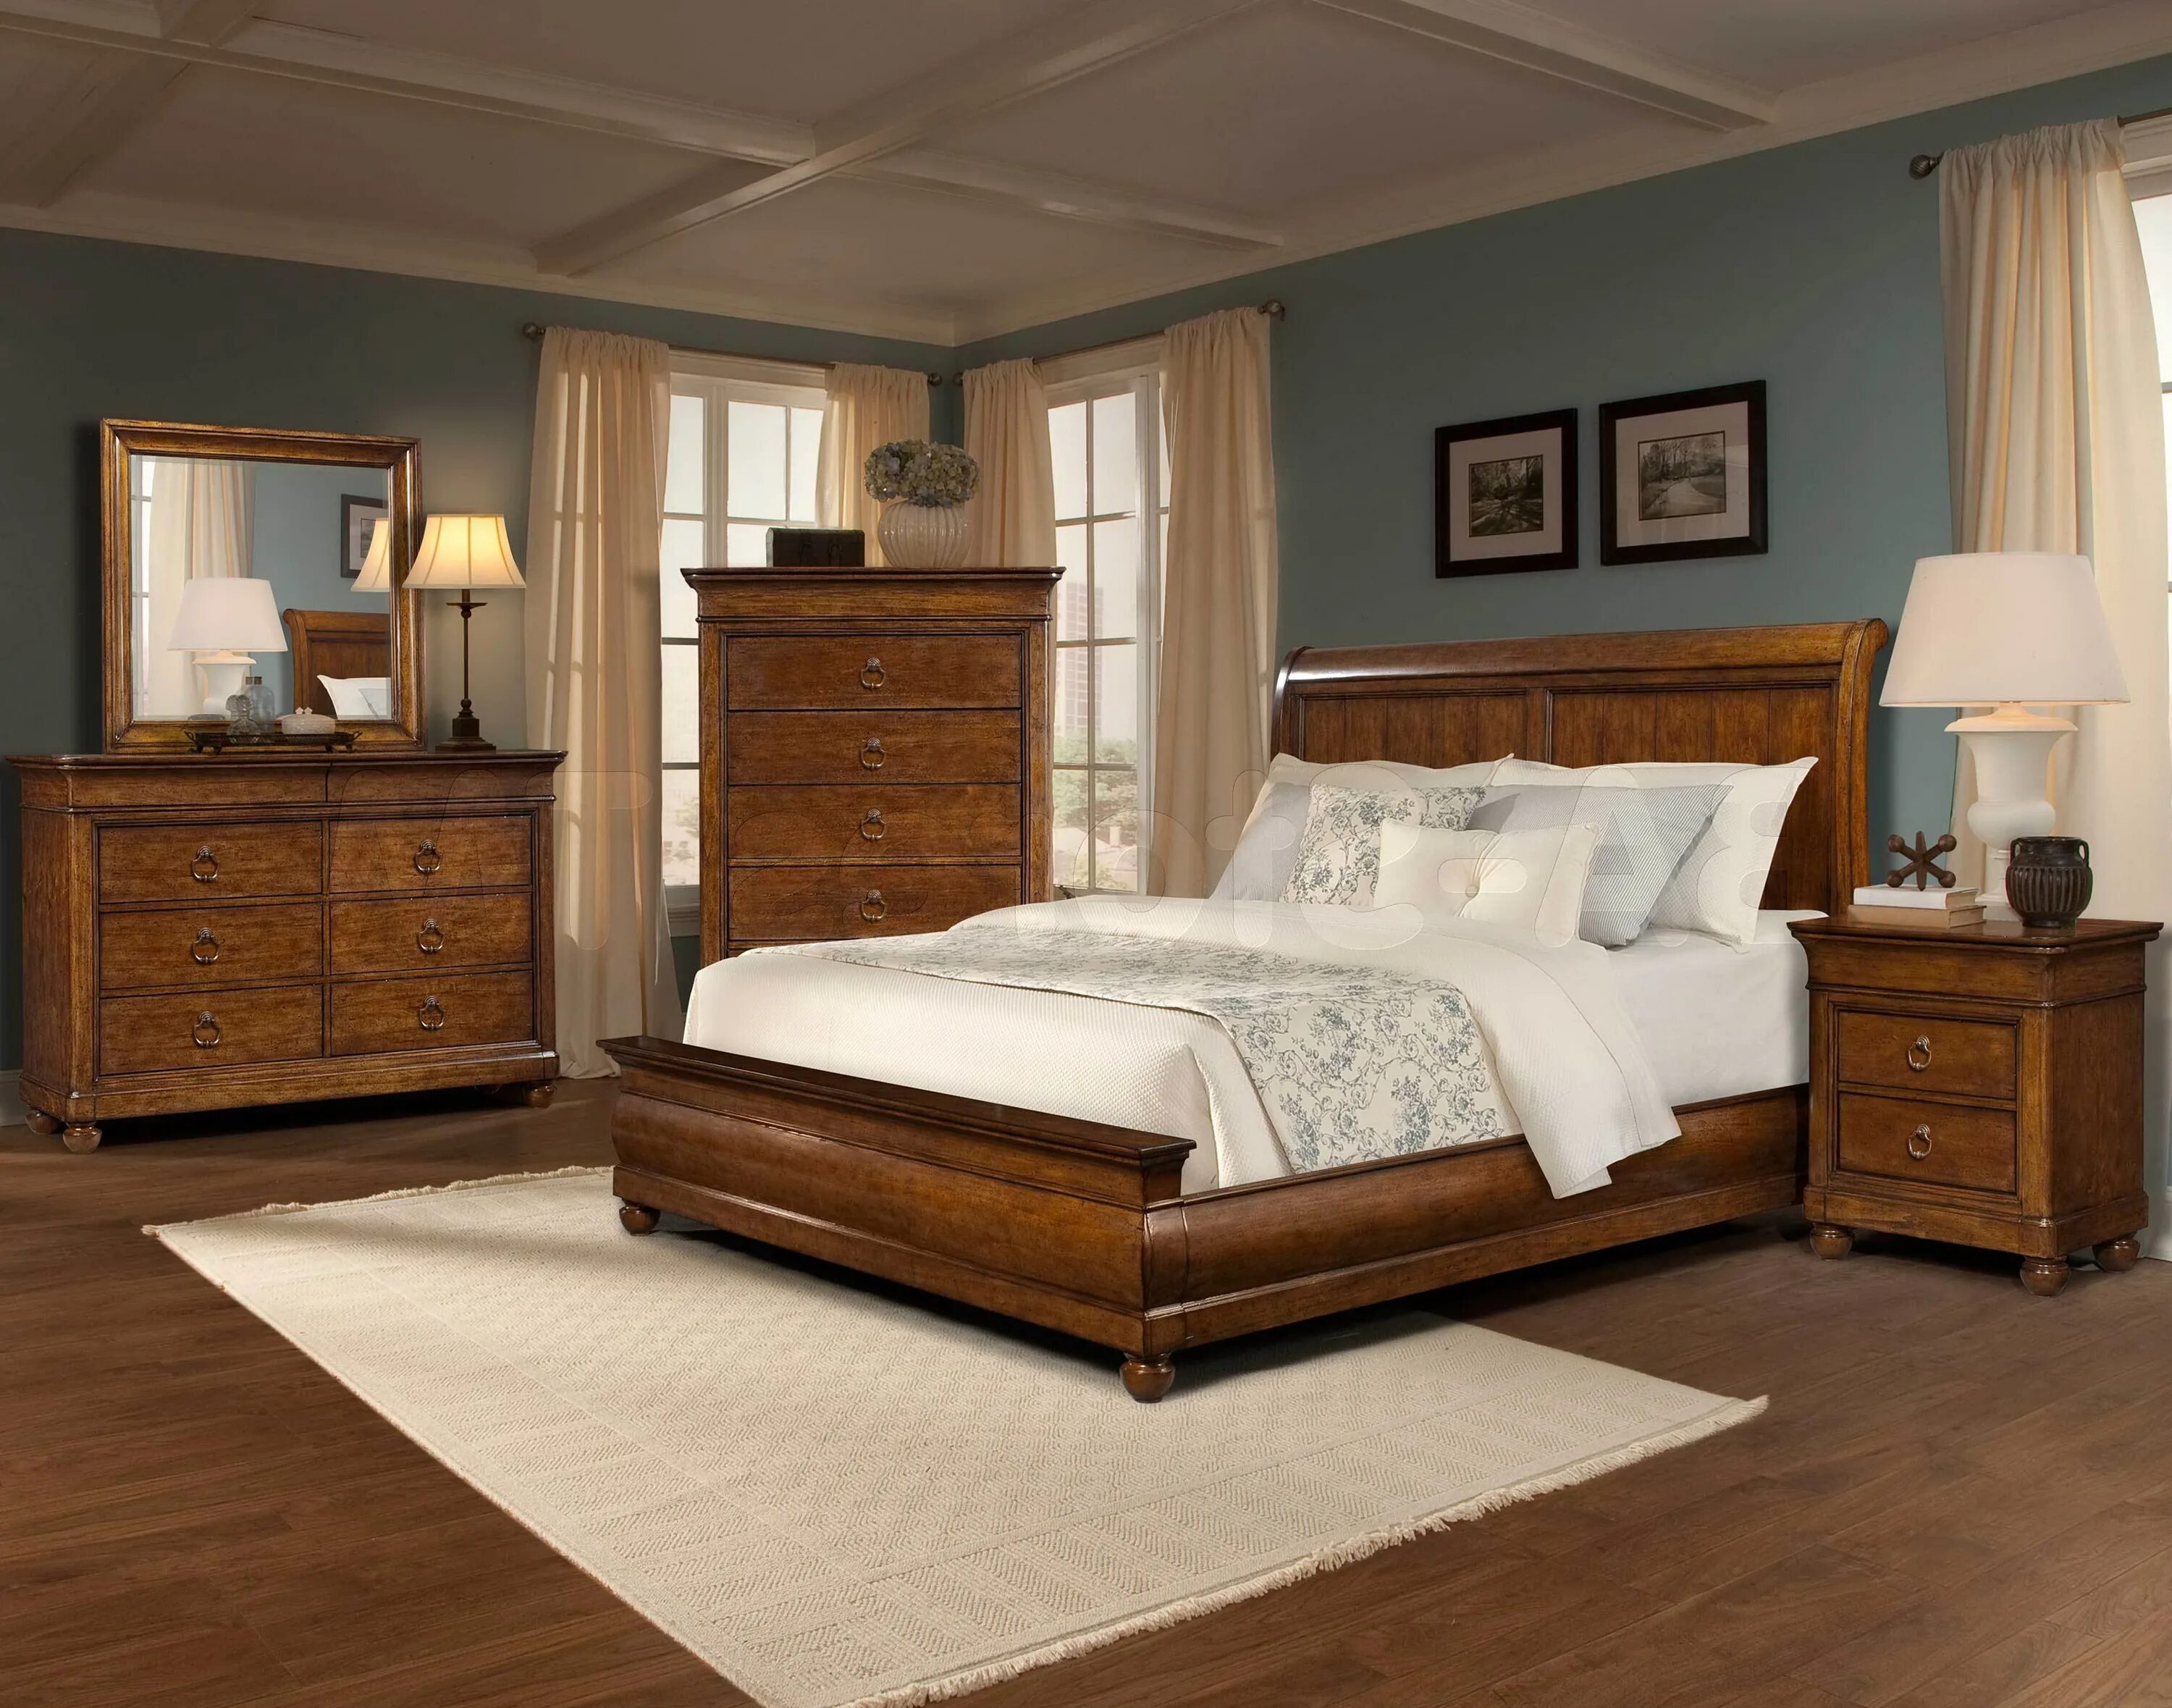 Спальня. Спальни из массива дерева. Спальня с деревянной мебелью. Деревянная мебель в интерьере.